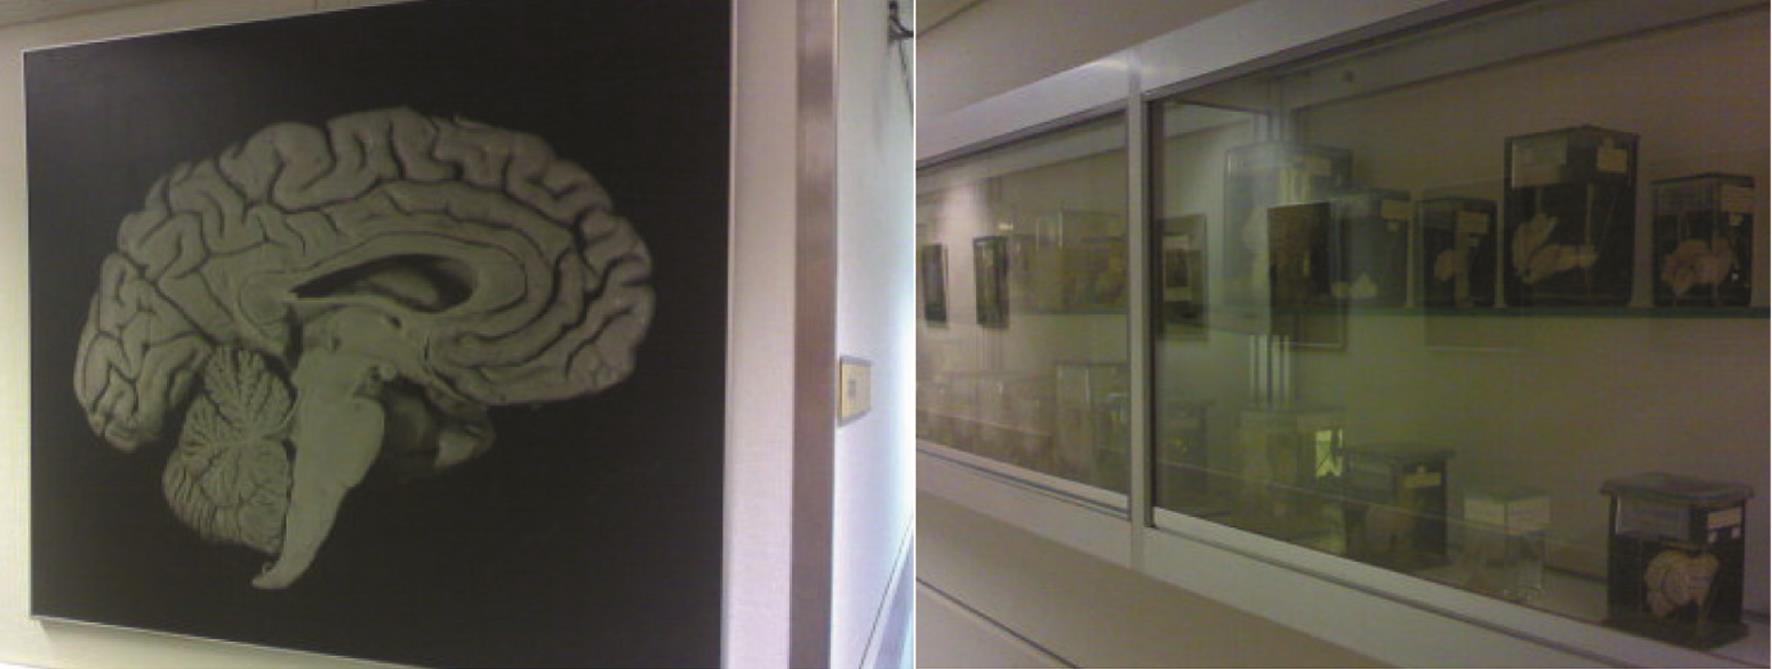 人脑矢状切面图，不需要修饰，本身就是一个艺术作品了（左）；橱窗上摆放的各种形态的动物神经系统实物标本，又是一件件艺术作品（右）。